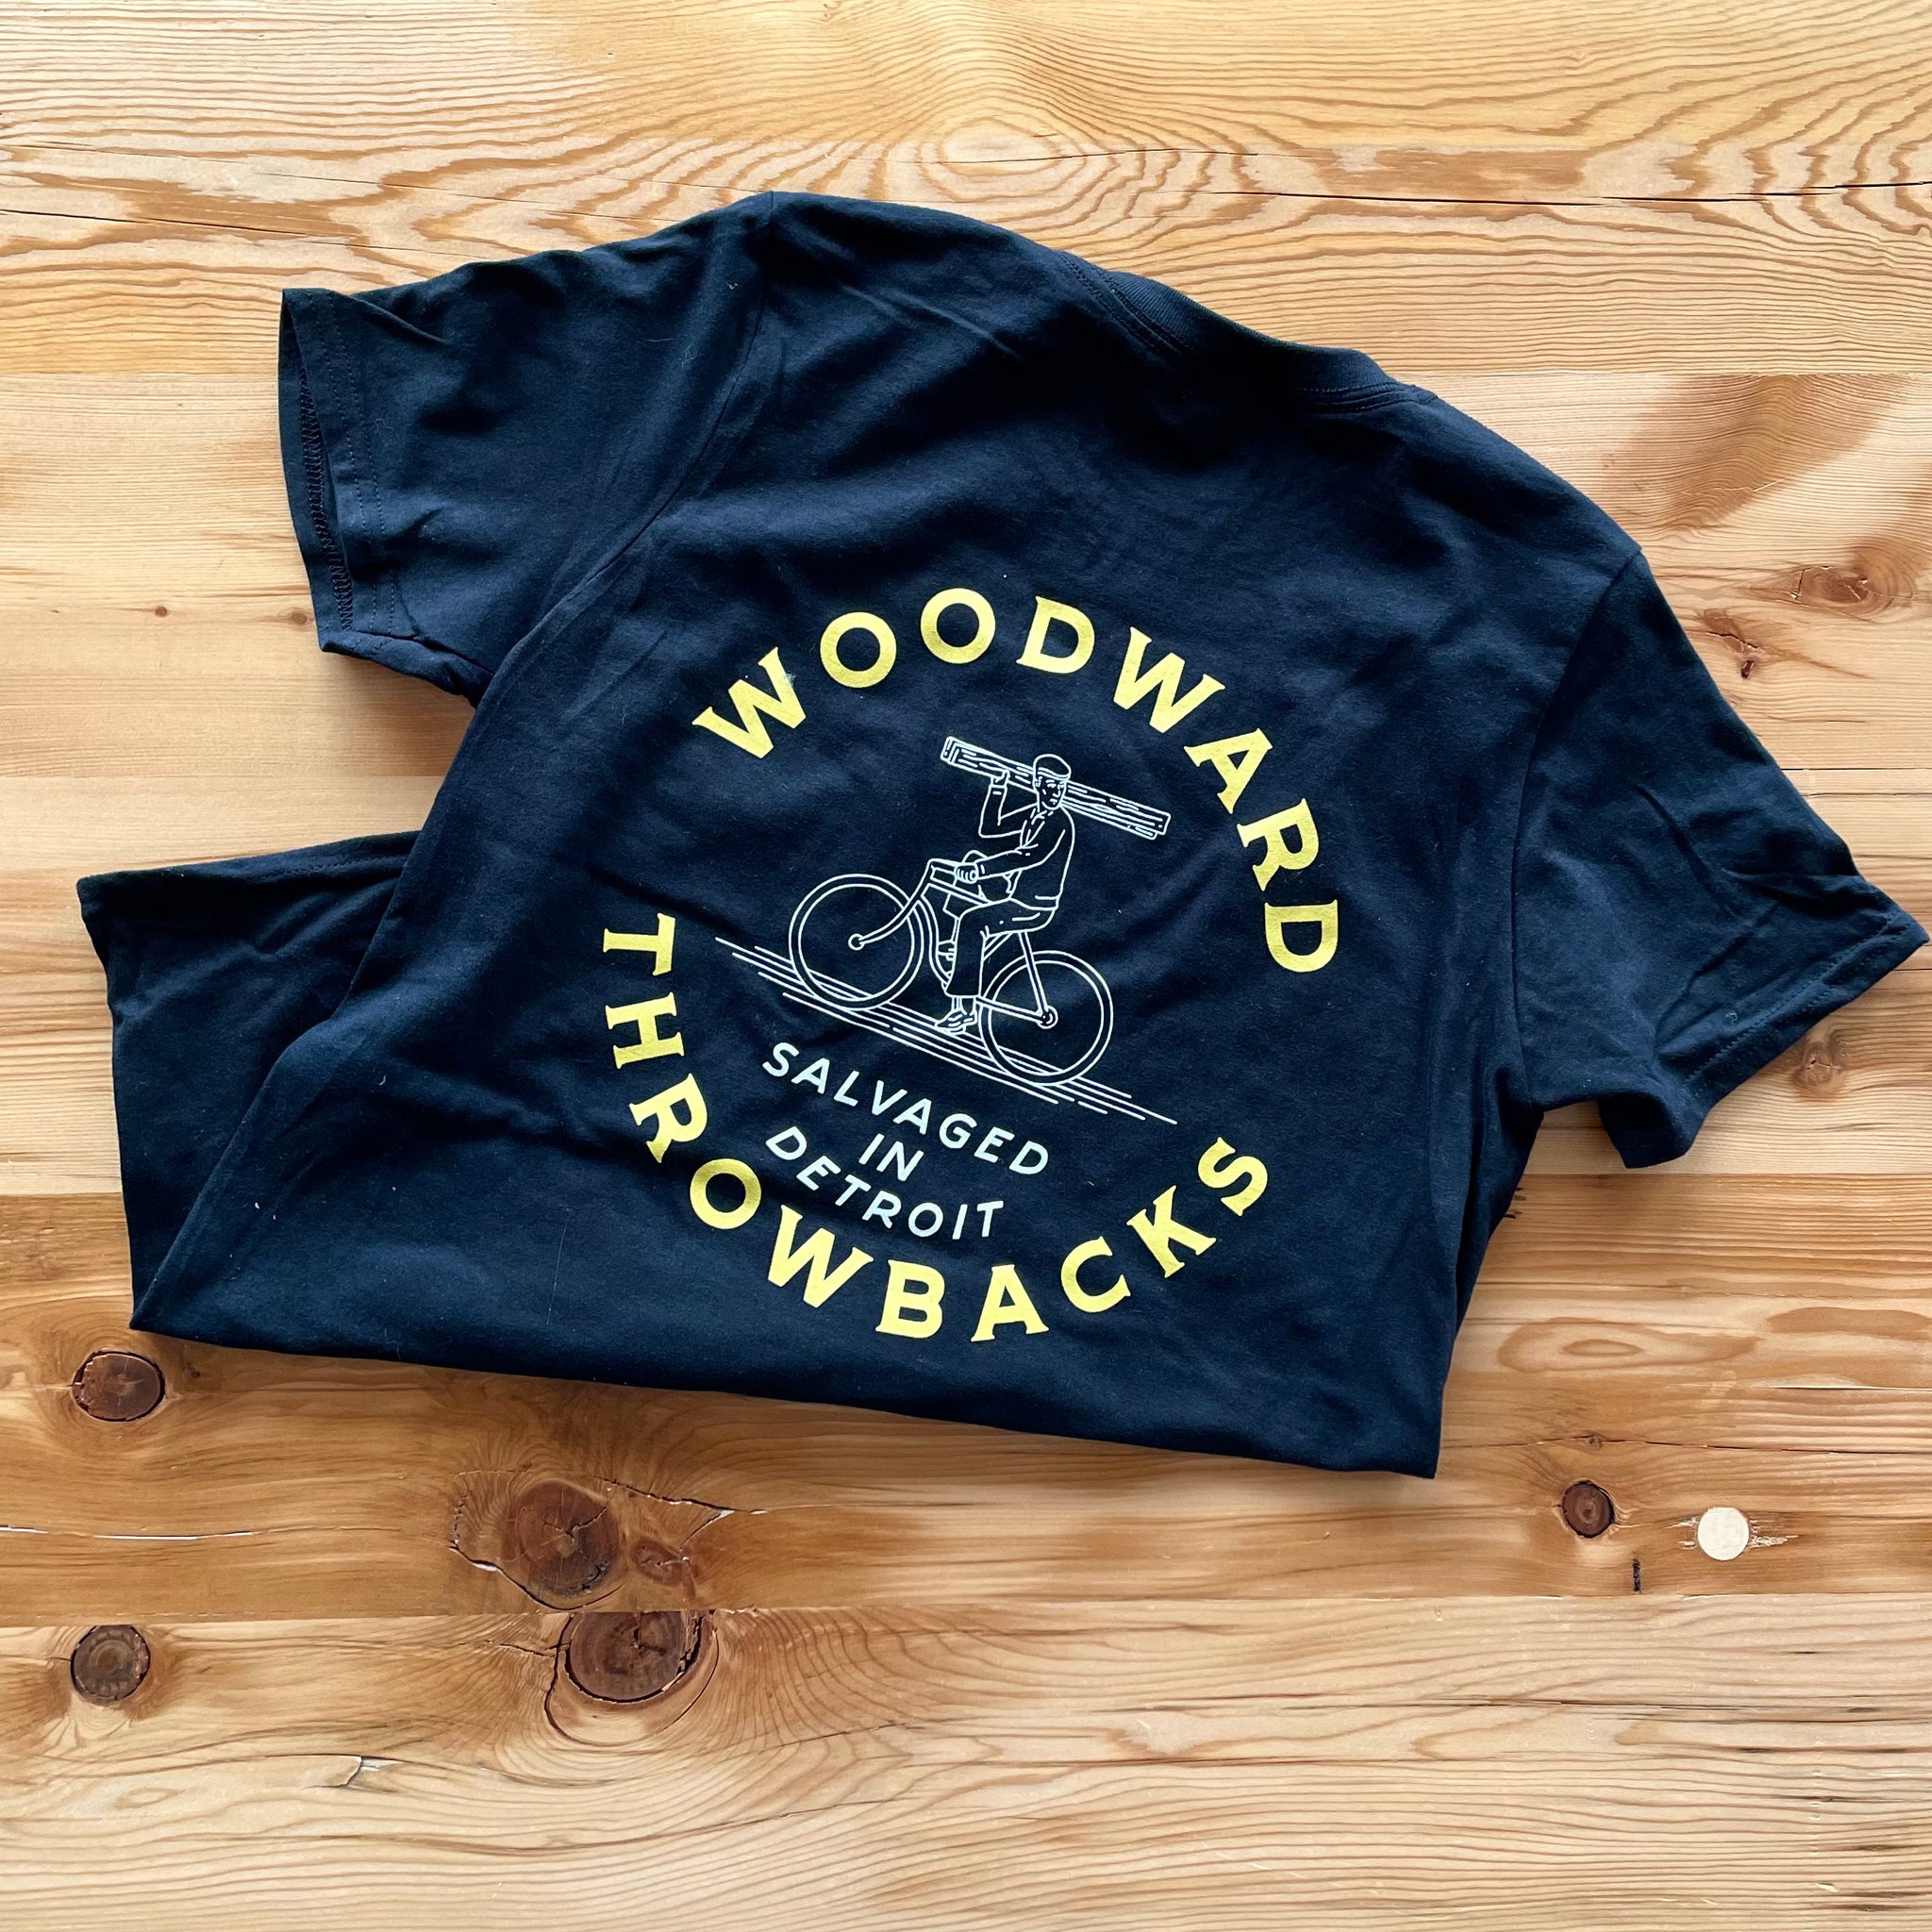 Woodward Throwbacks Tee